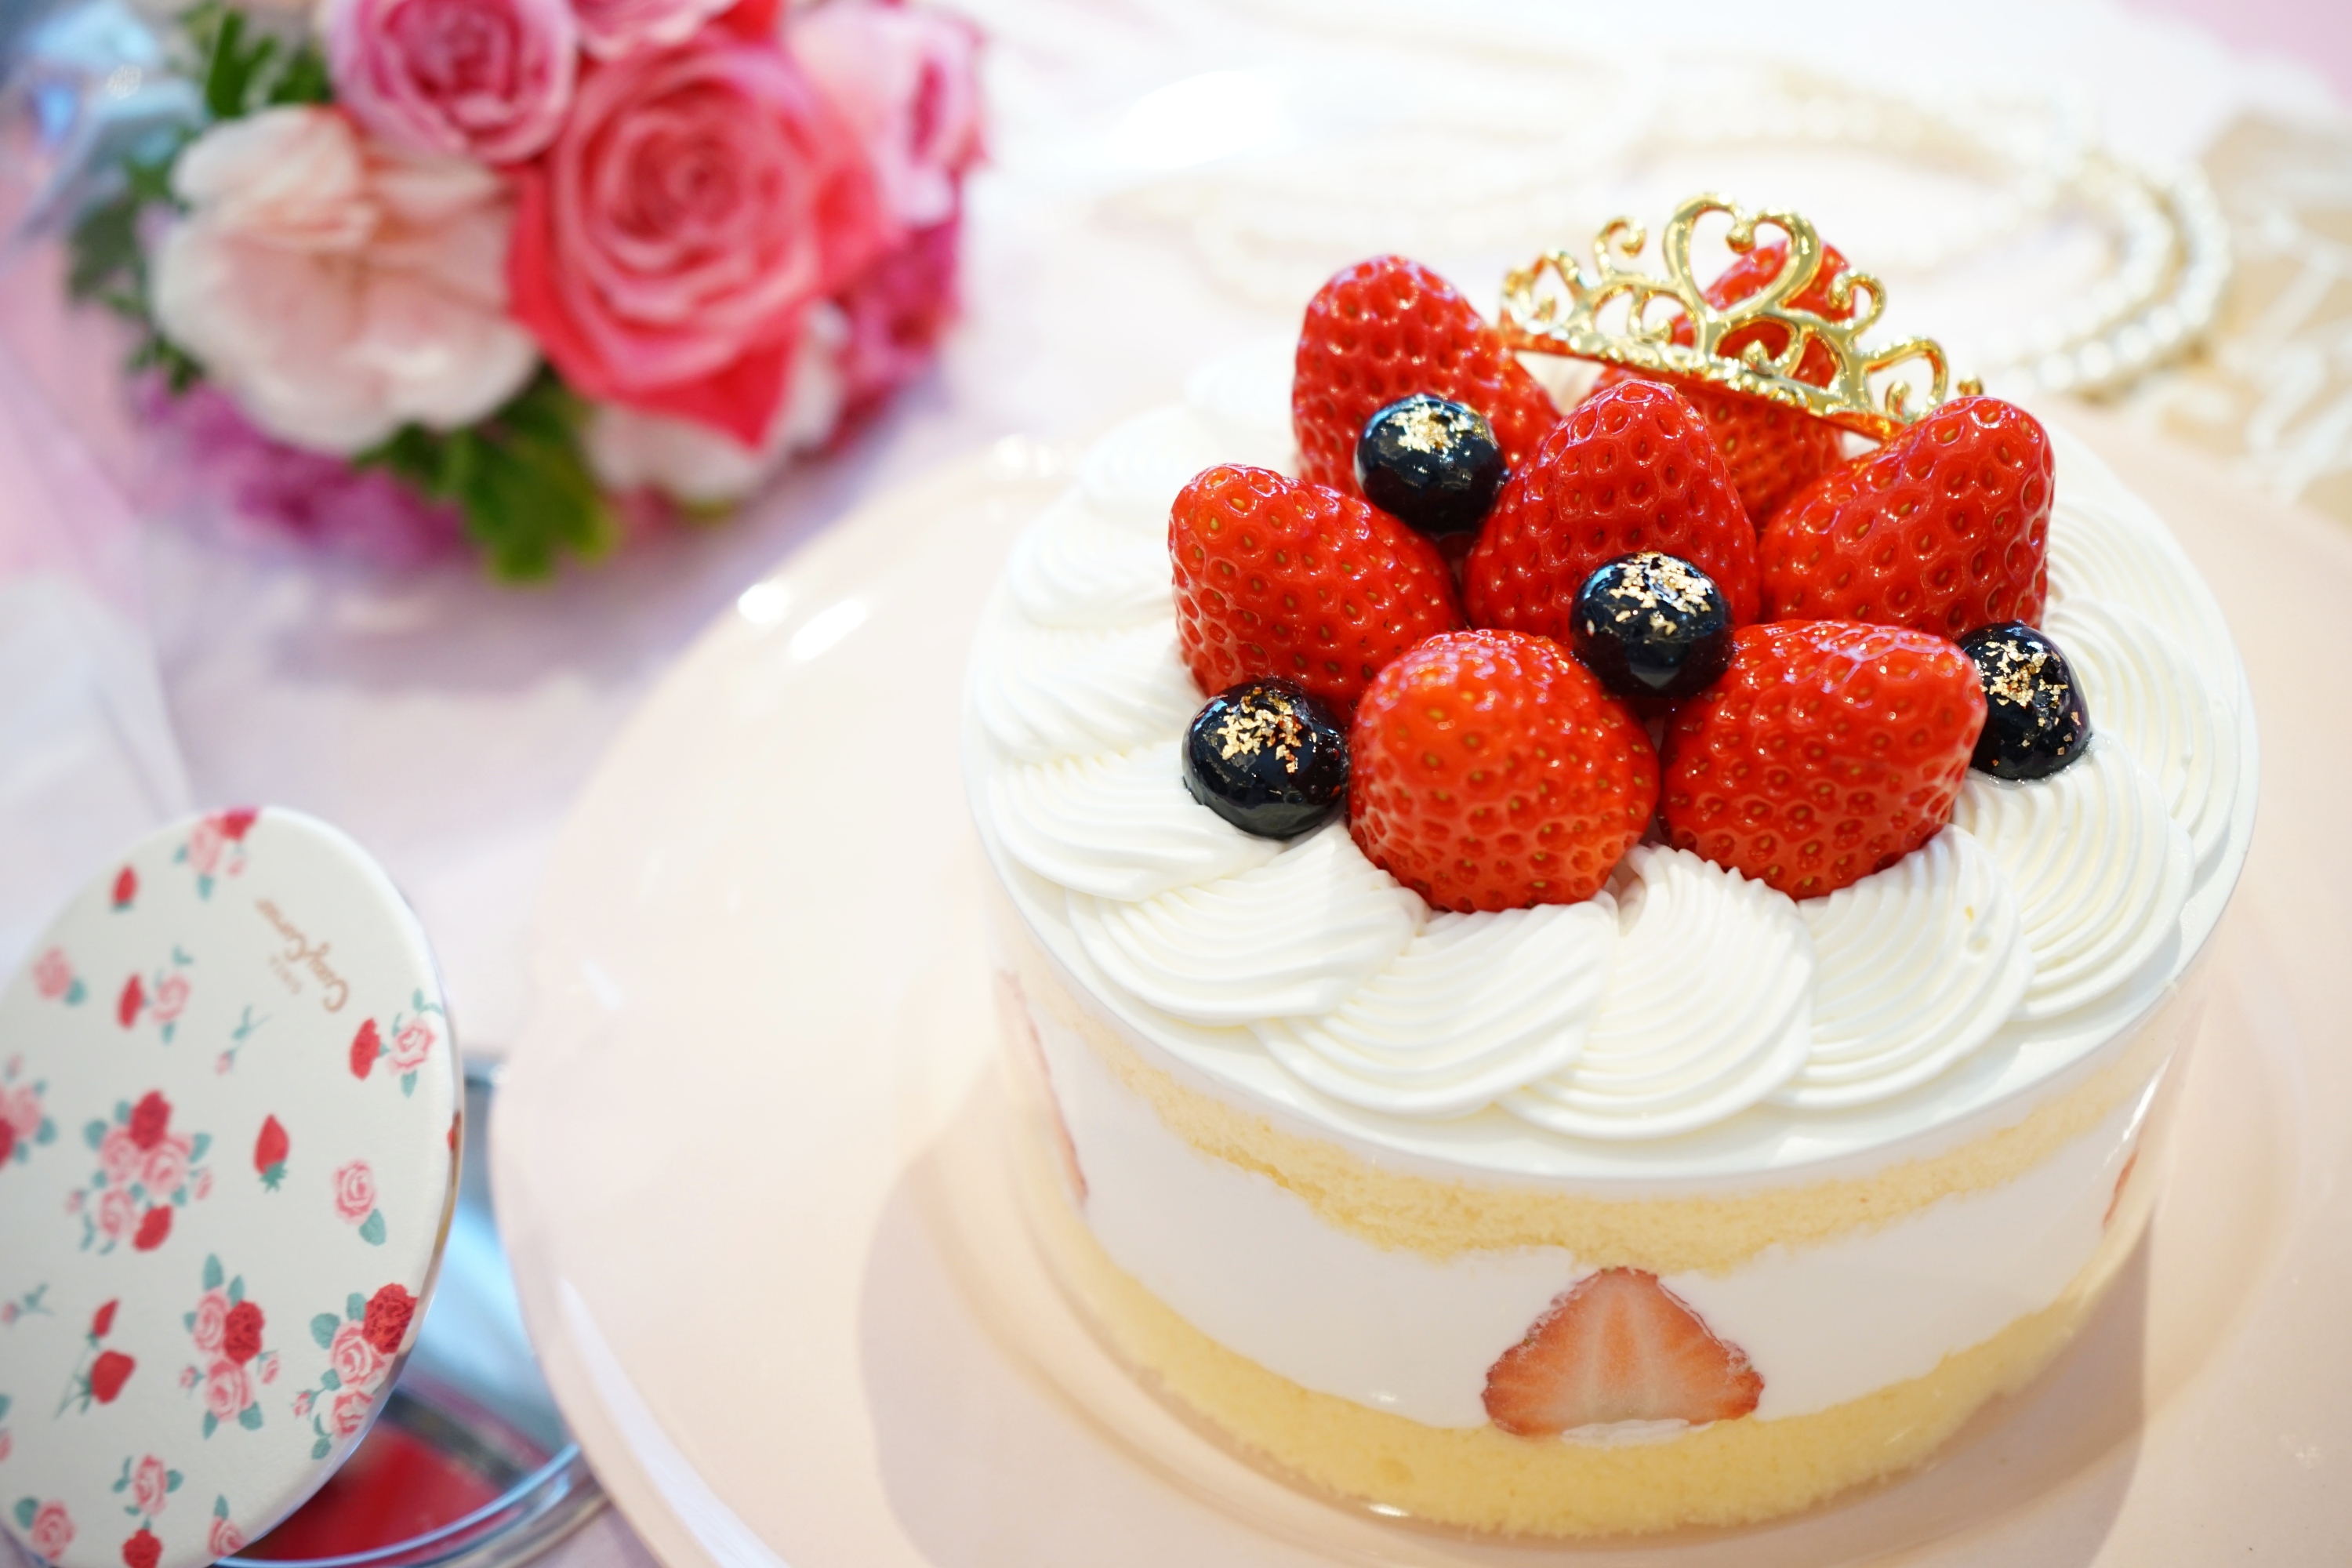 佐藤ひと美のスイーツレポート 37 母の日に贈る 苺のケーキ と感謝の気持ち